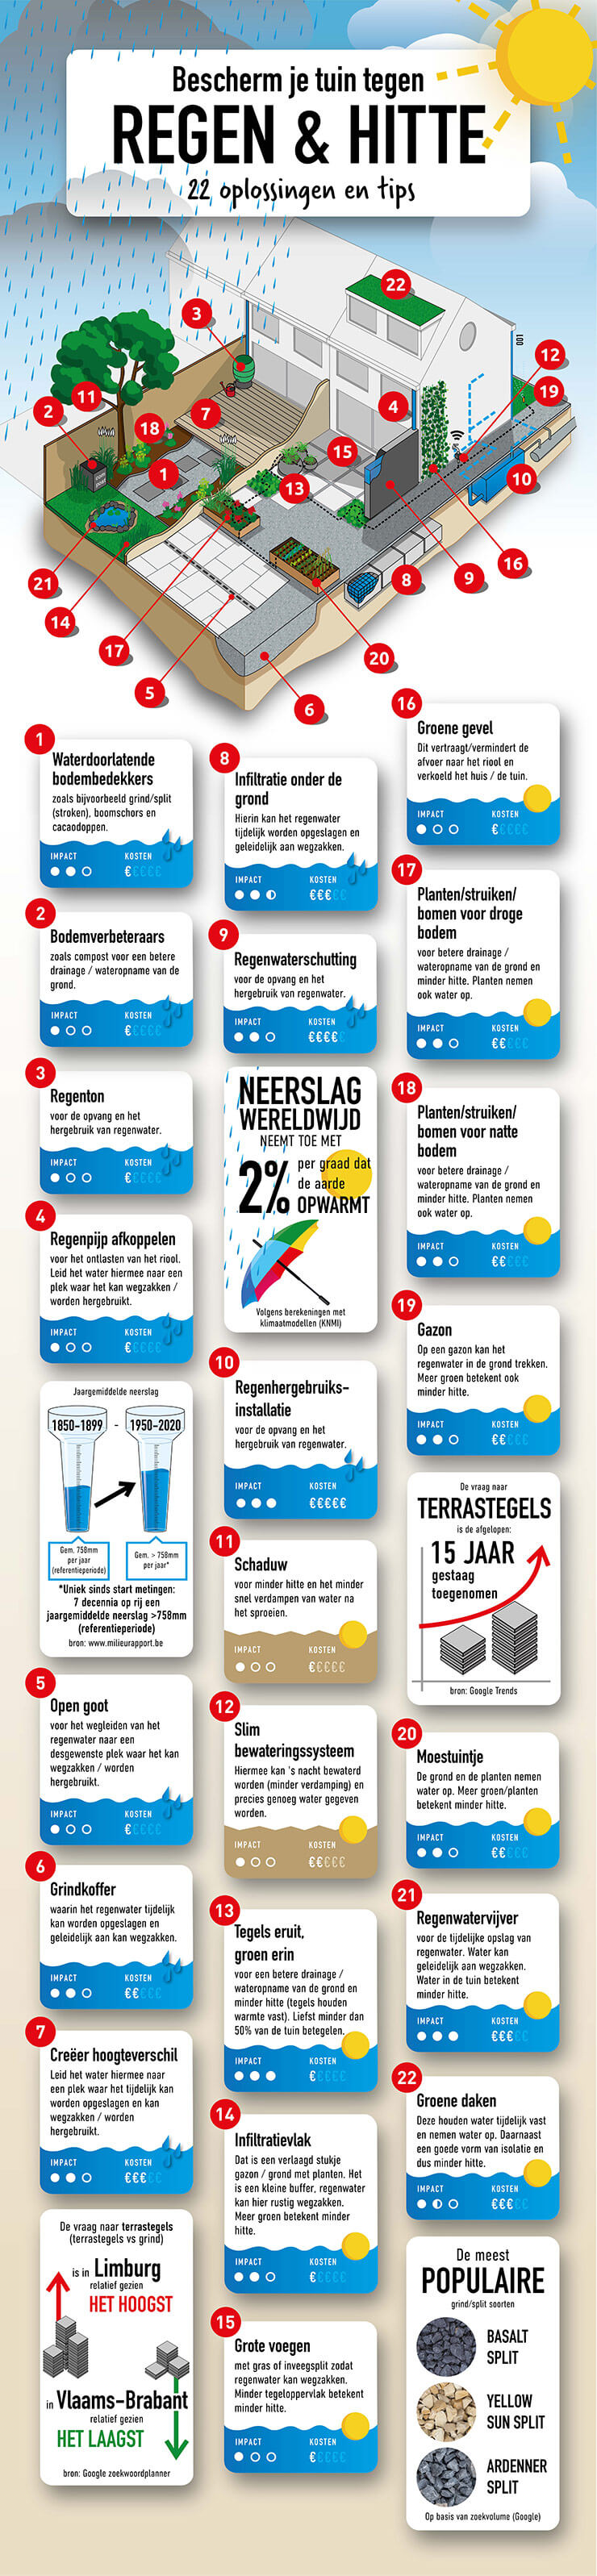 Infographic maatregelen tegen regen en hitte